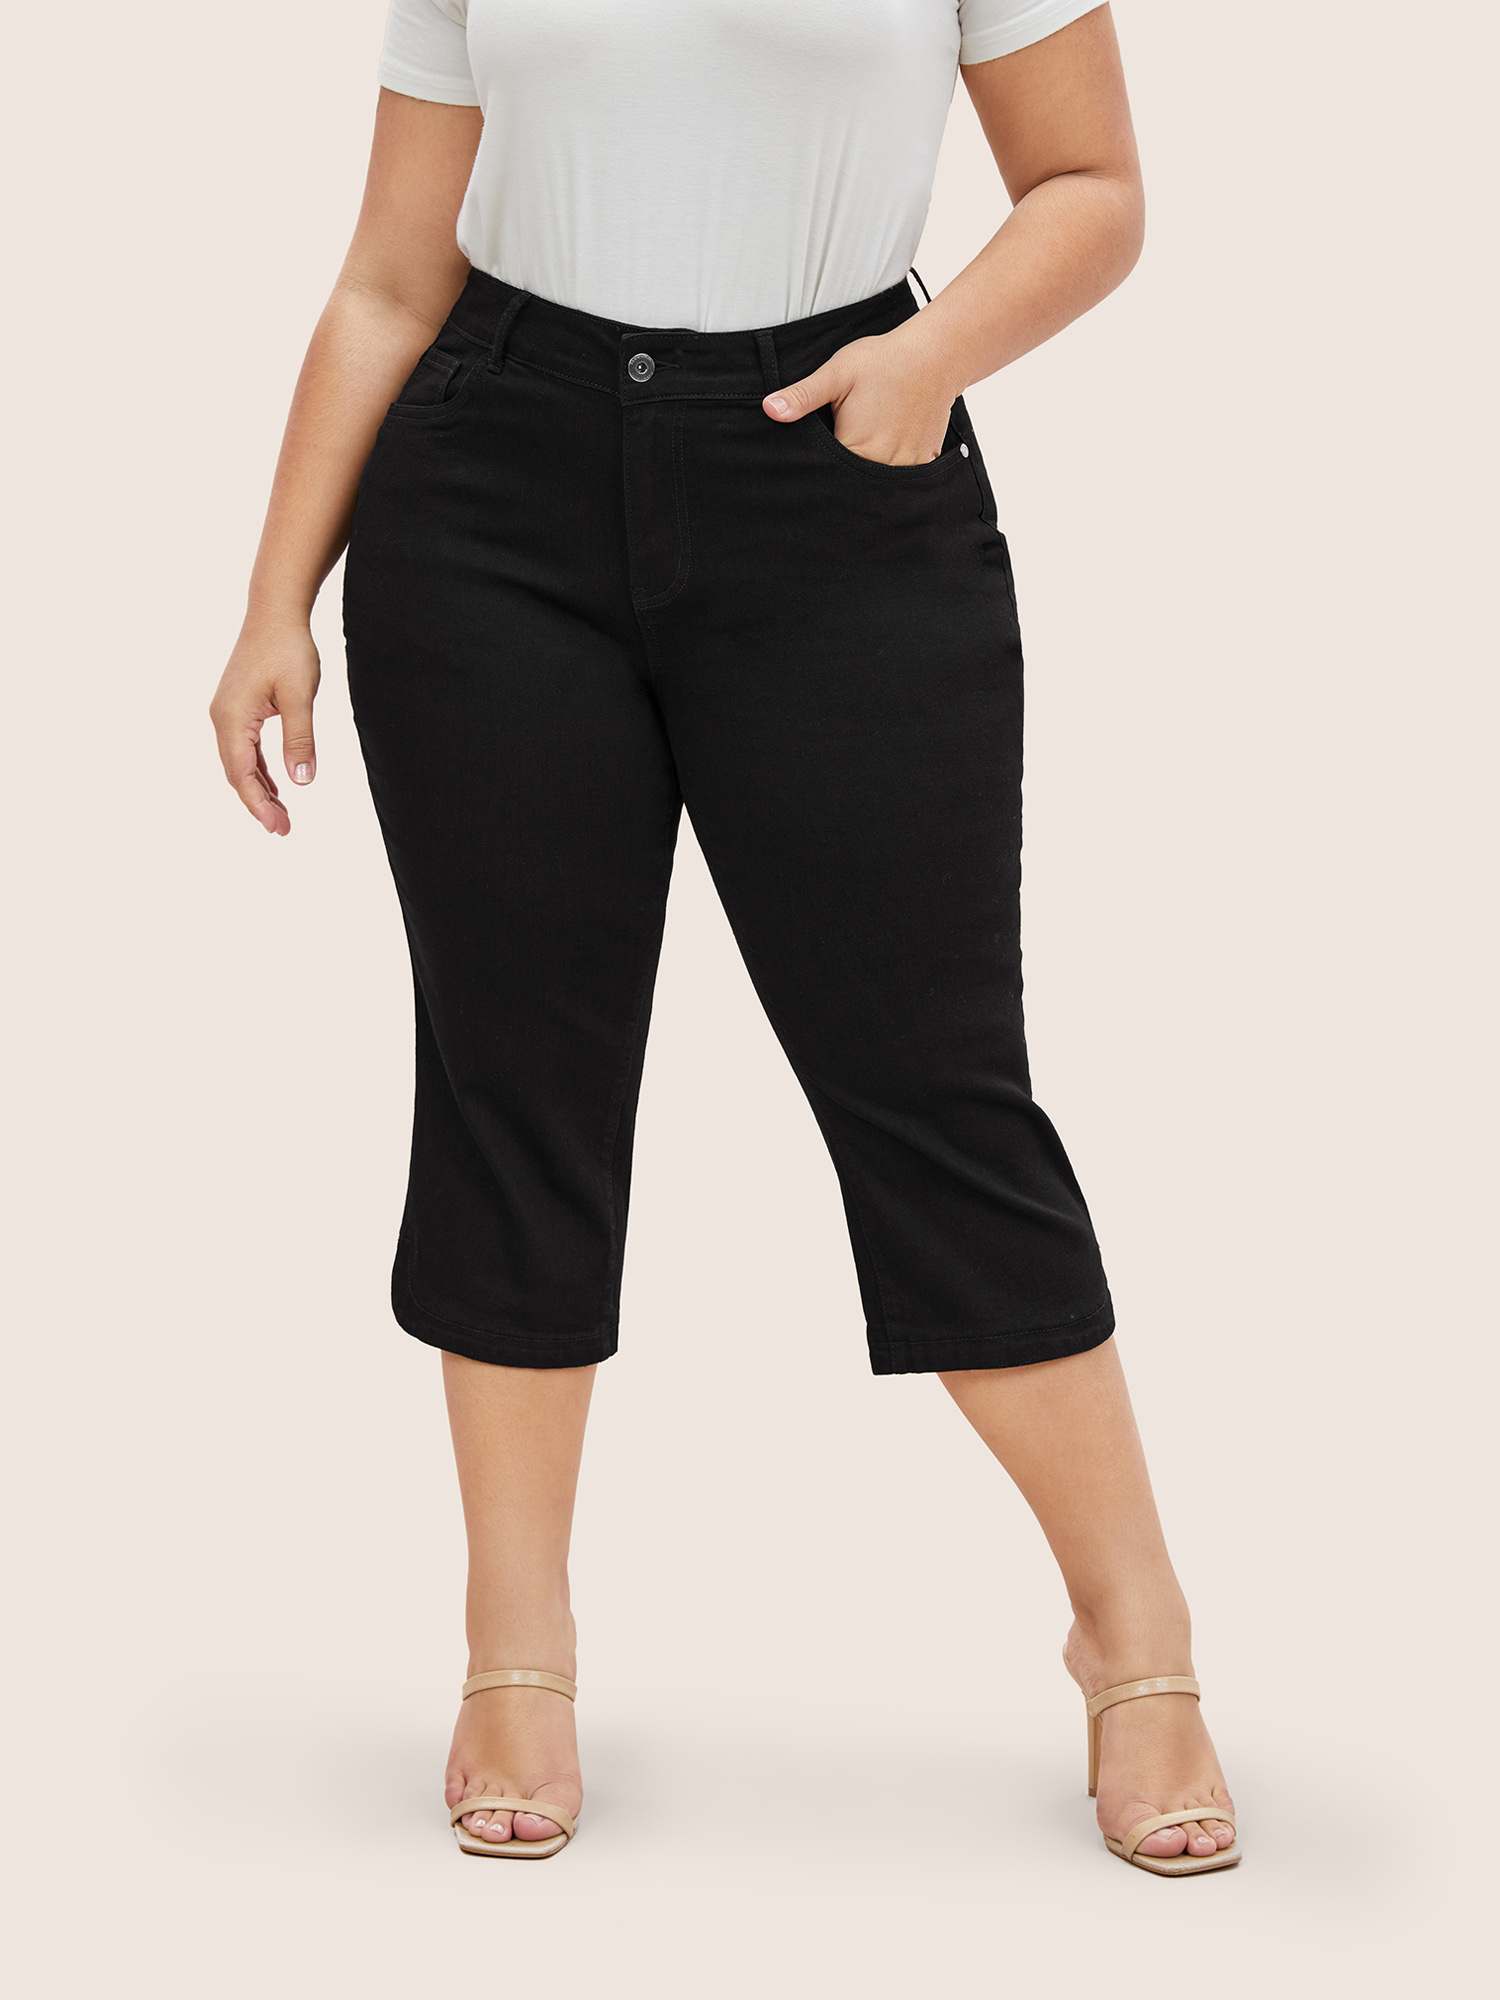 

Plus Size Black Wash Split Hem Cropped Jeans Women Black Elegant High stretch Slanted pocket Jeans BloomChic